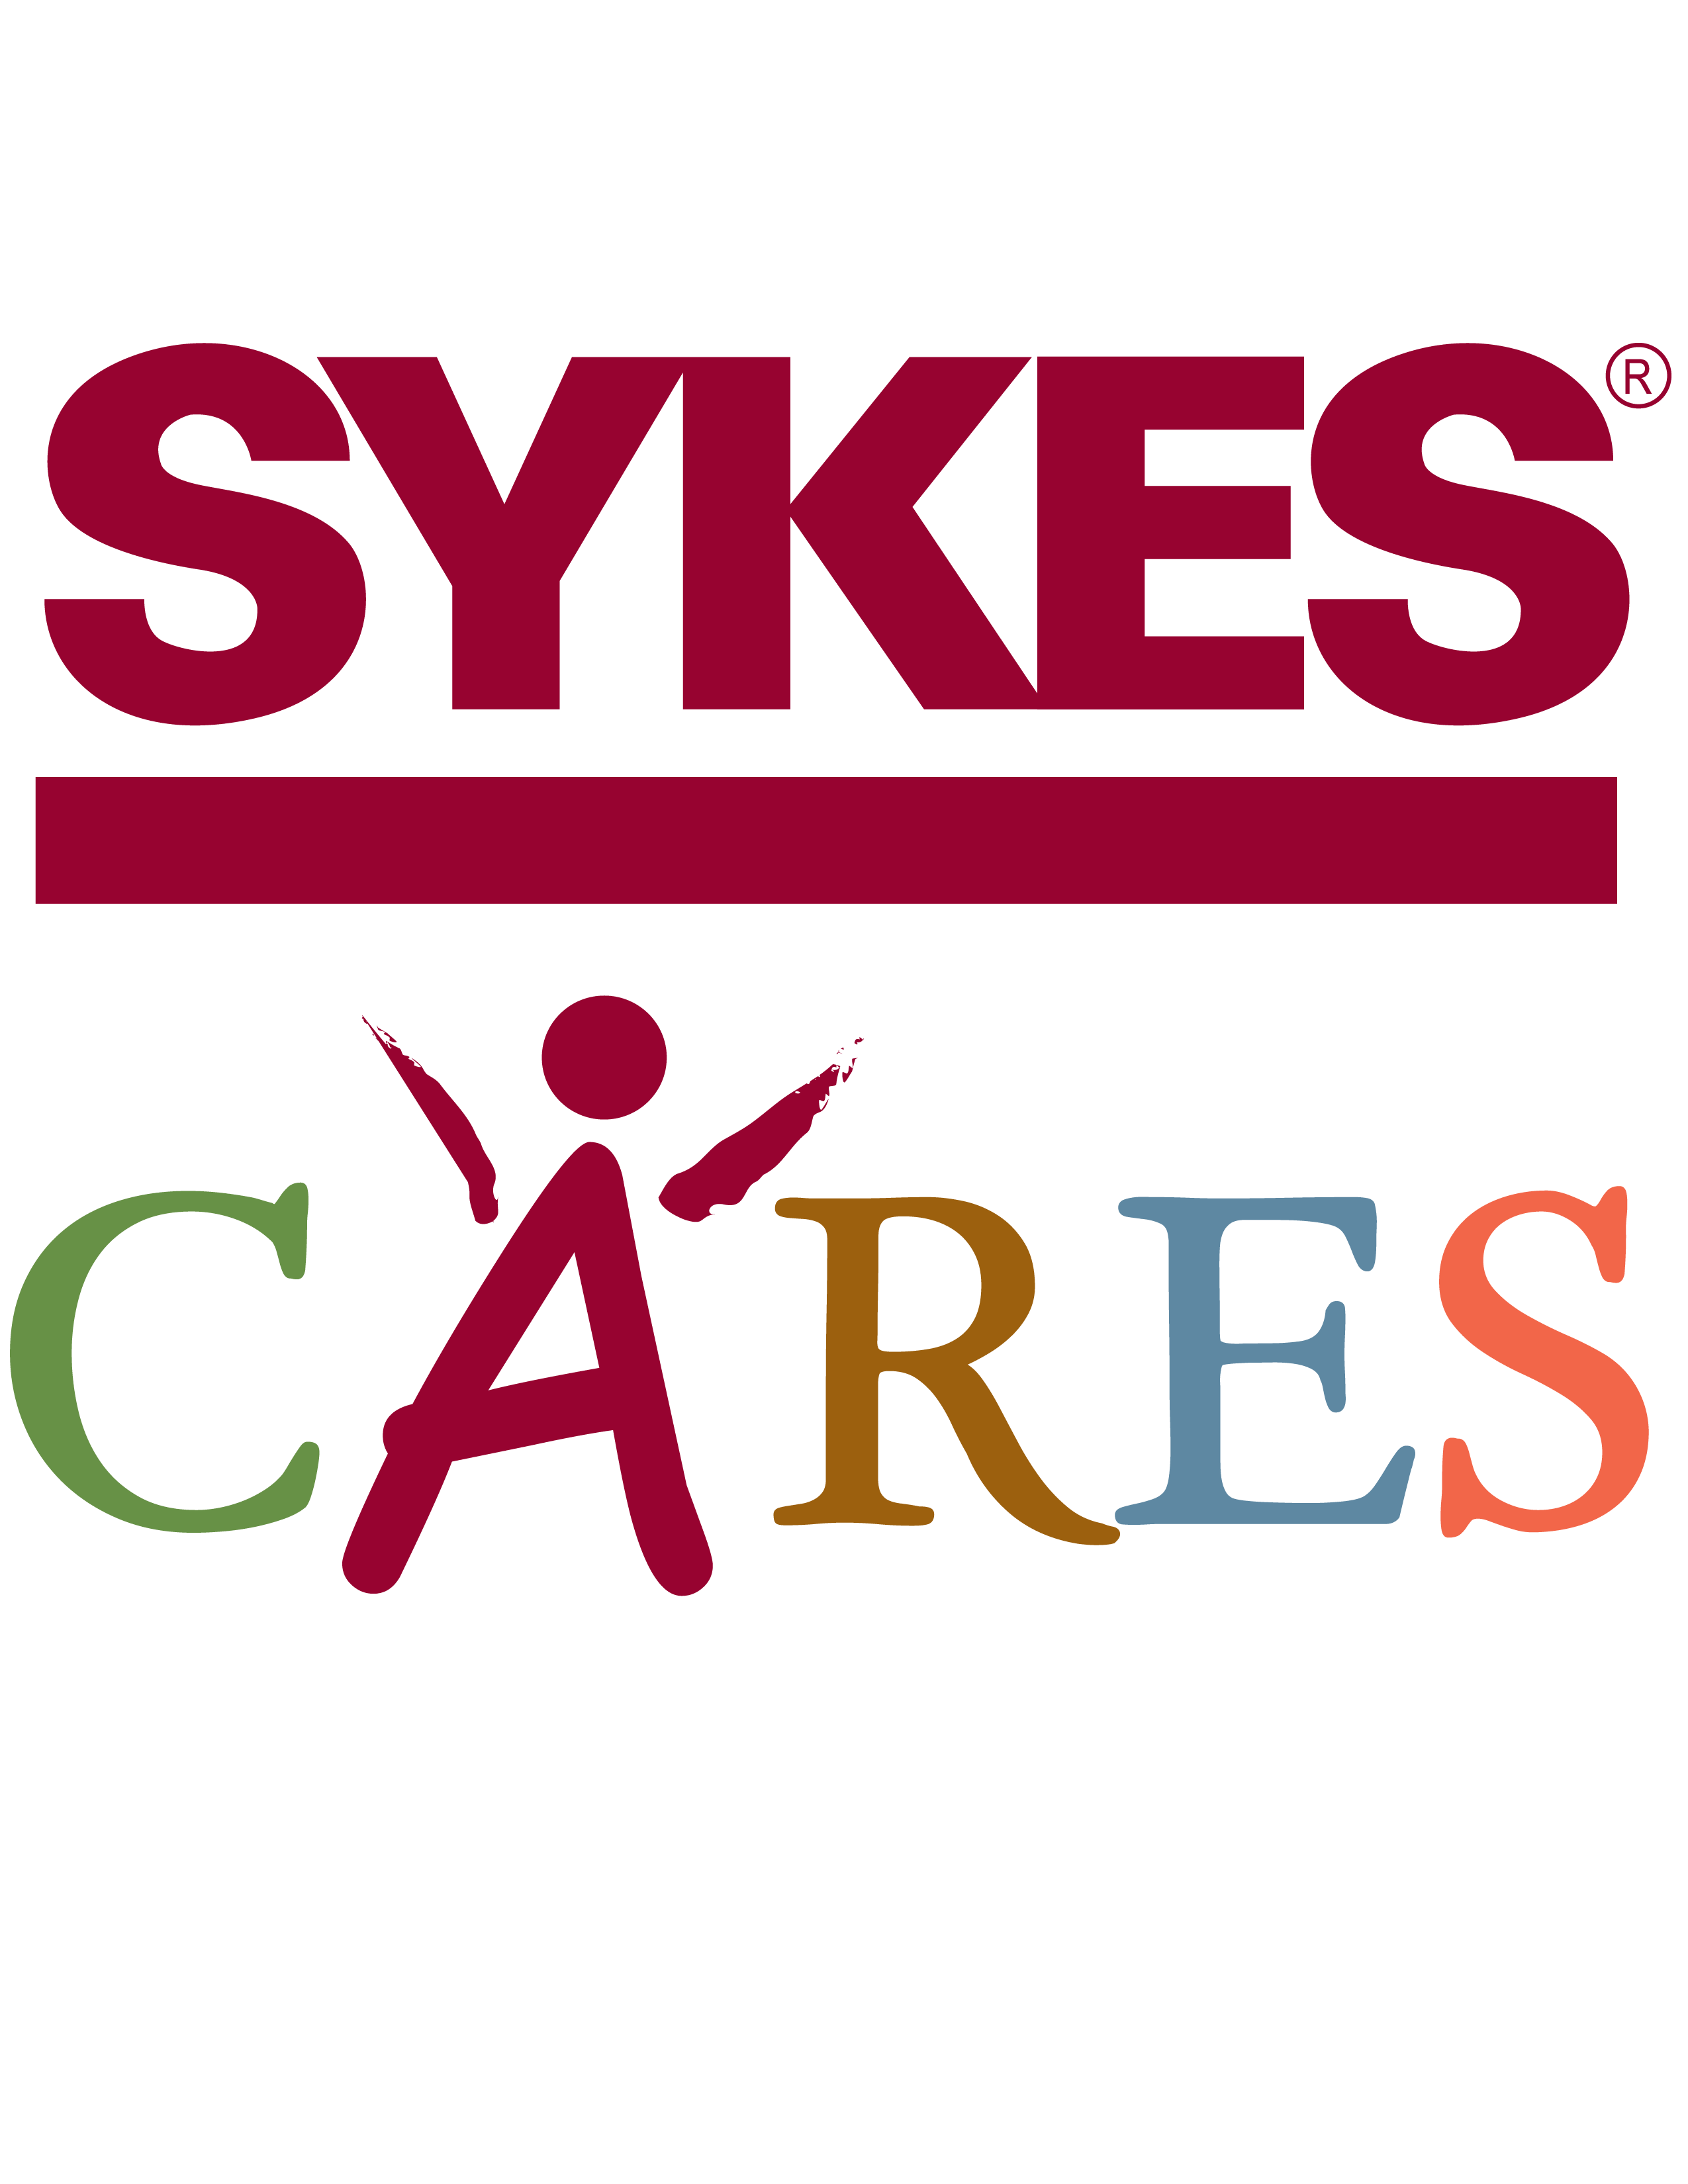 Sykes Logo - SYKES CARES LOGO-01 (2) – Alabang Ladies International Group, Inc.